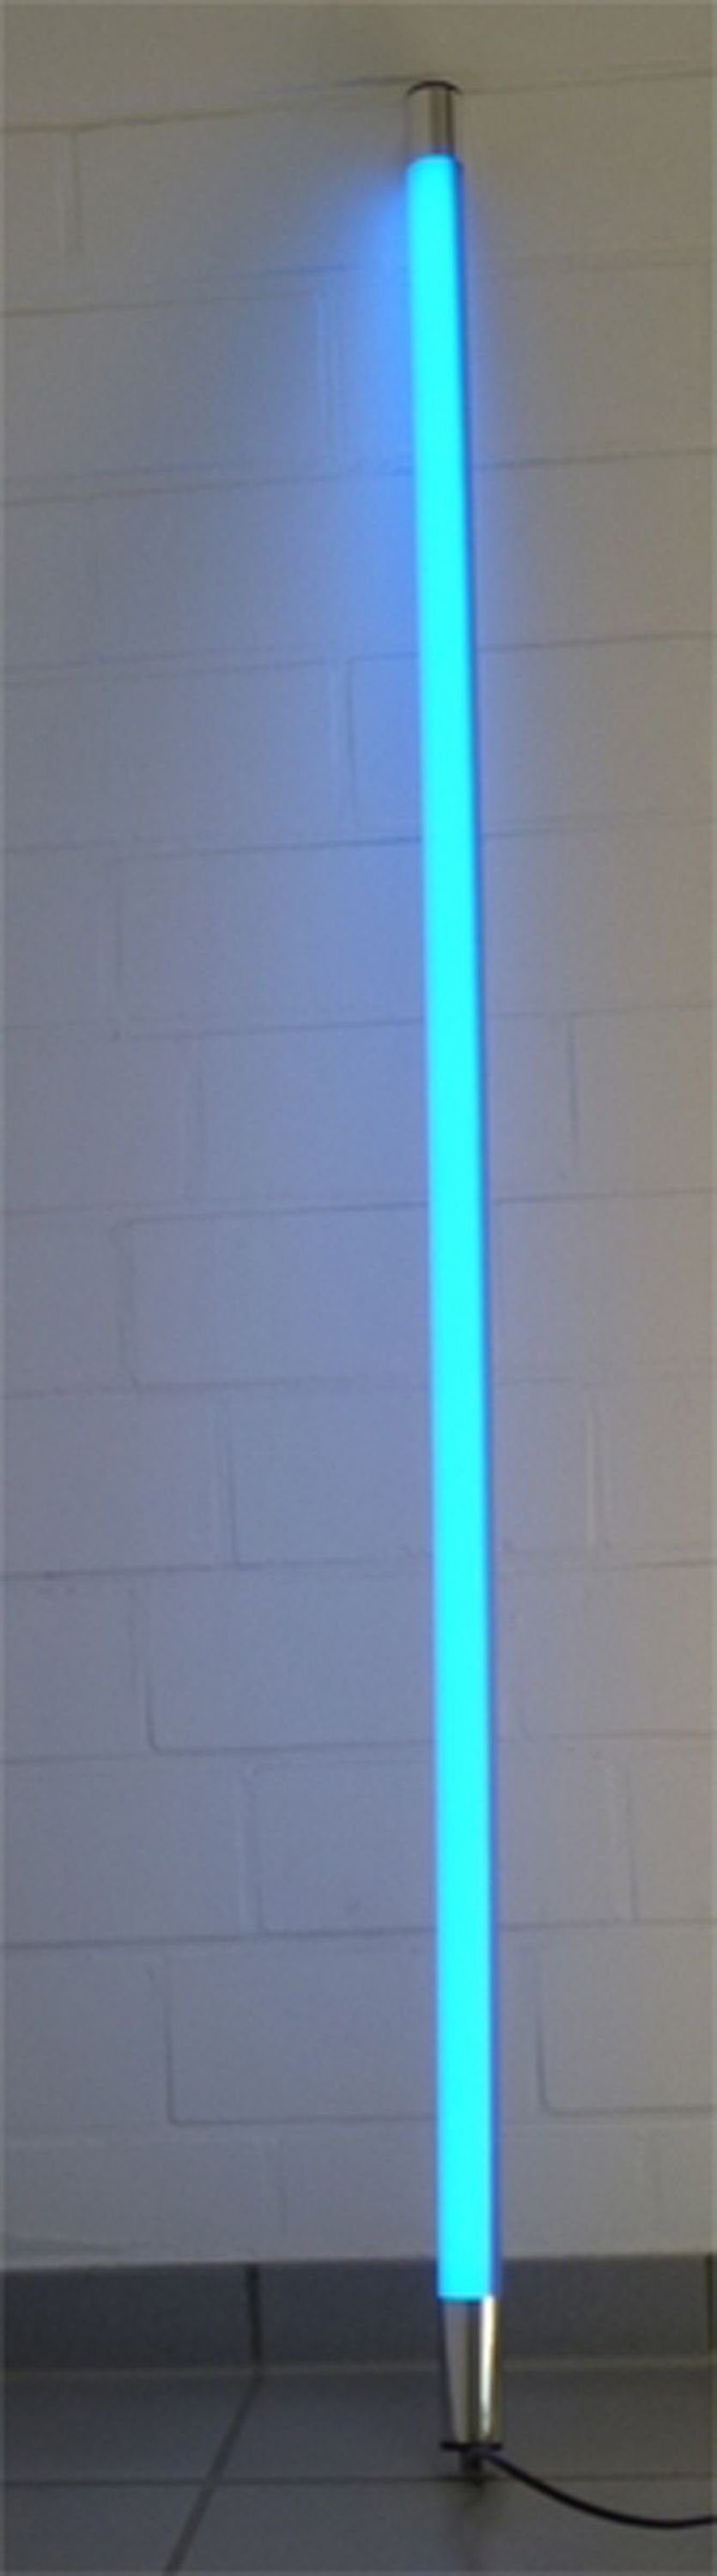 XENON LED Wandleuchte LED Leuchtstab Satiniert 0,63m Länge 950 Lumen IP44 für Außen Blau, LED Röhre T8, Xenon